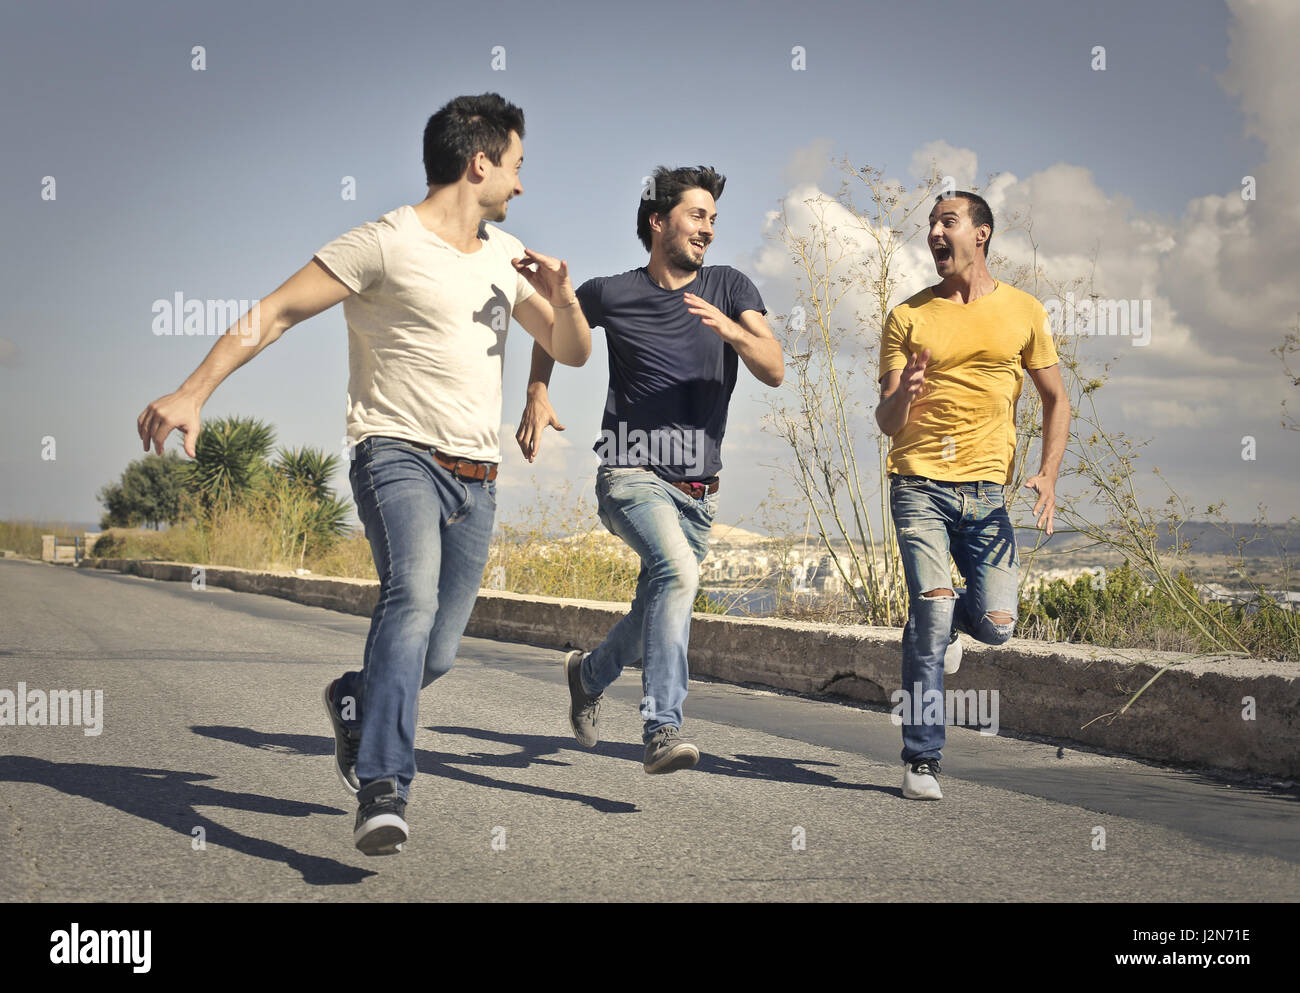 3 men running on street Stock Photo